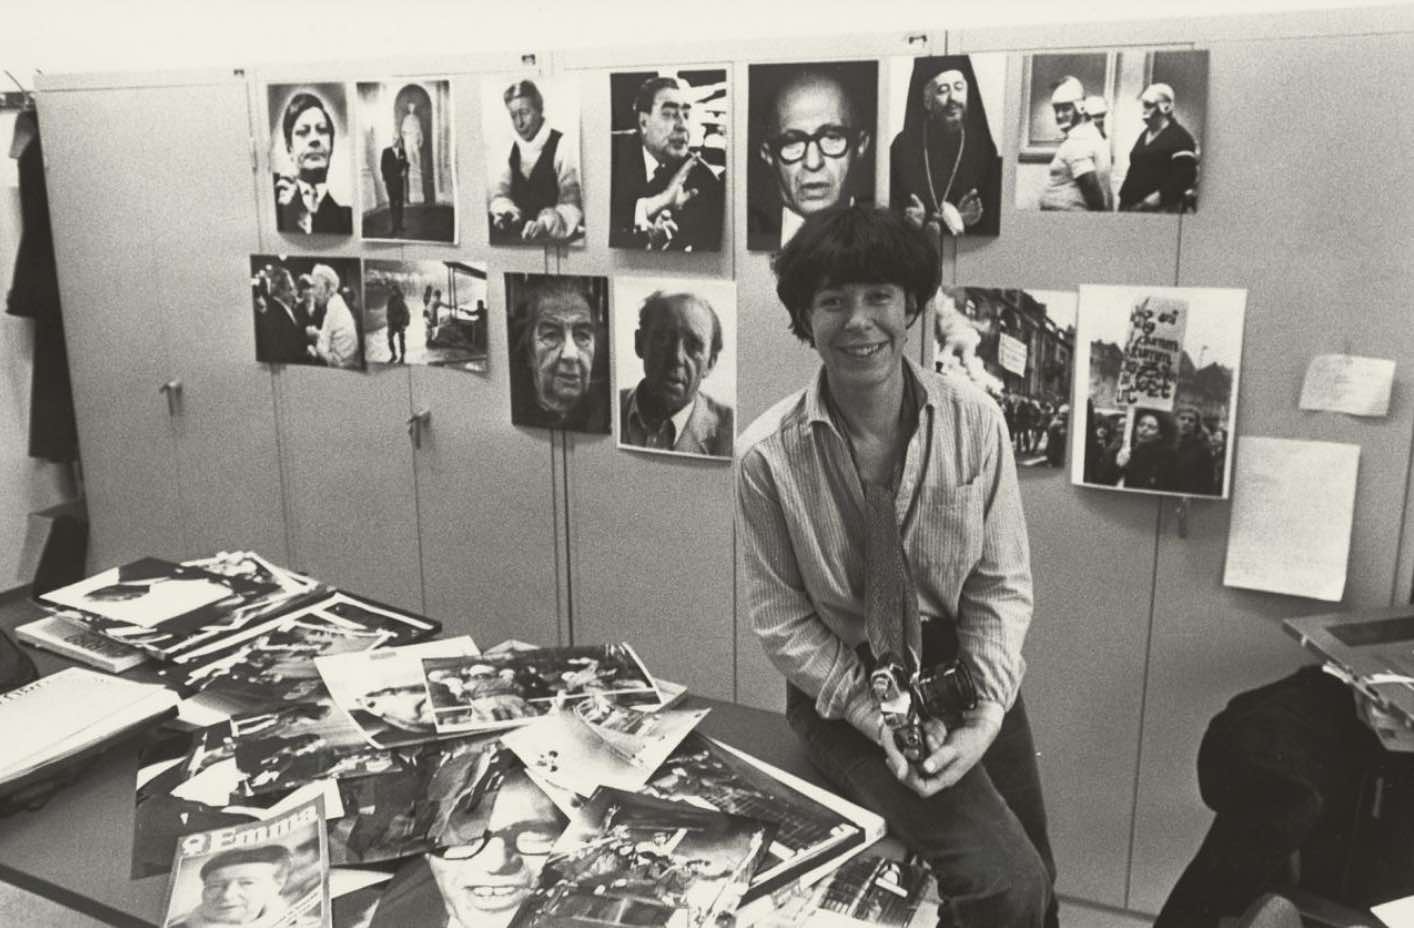 Enlarge image: Schwarz-weiß Fotografie, auf der eine Frau mit kurzen dunklen Haaren auf einem Tisch sitzt mit vielen Fotos und Magazinen, im Hintergrund Portäts an der Wand